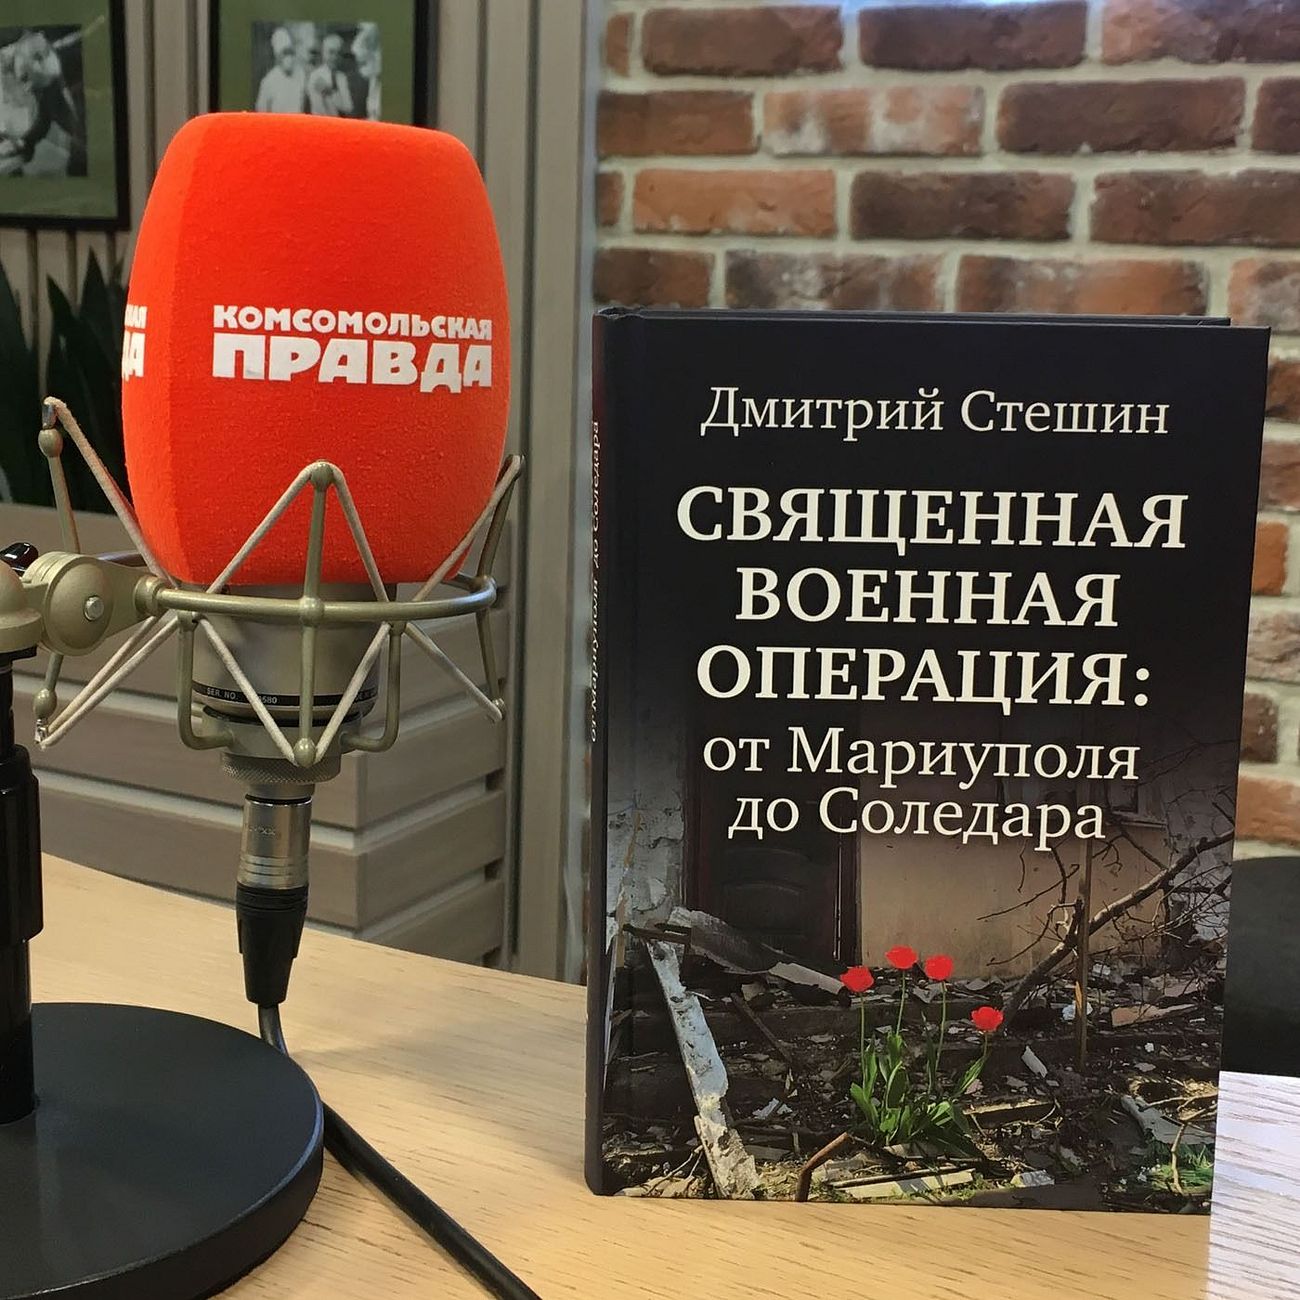 Аудиокнига Дмитрия Стешина «Священная Военная Операция: от Мариуполя до Соледара»